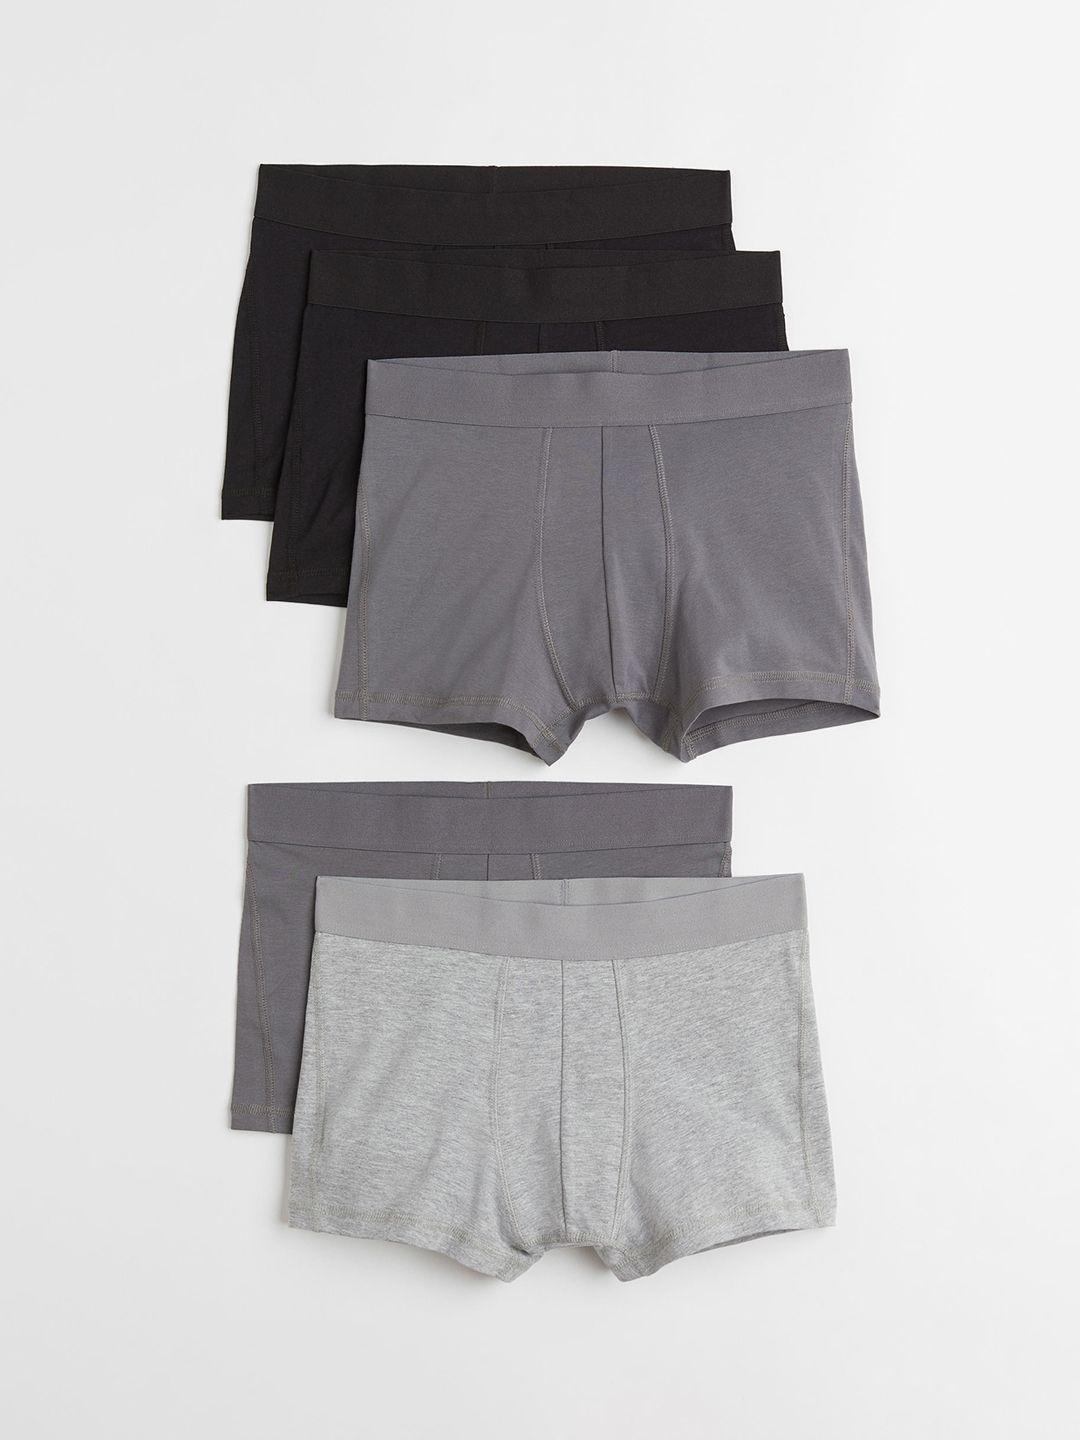 h&m men black & grey 5 pack short trunks